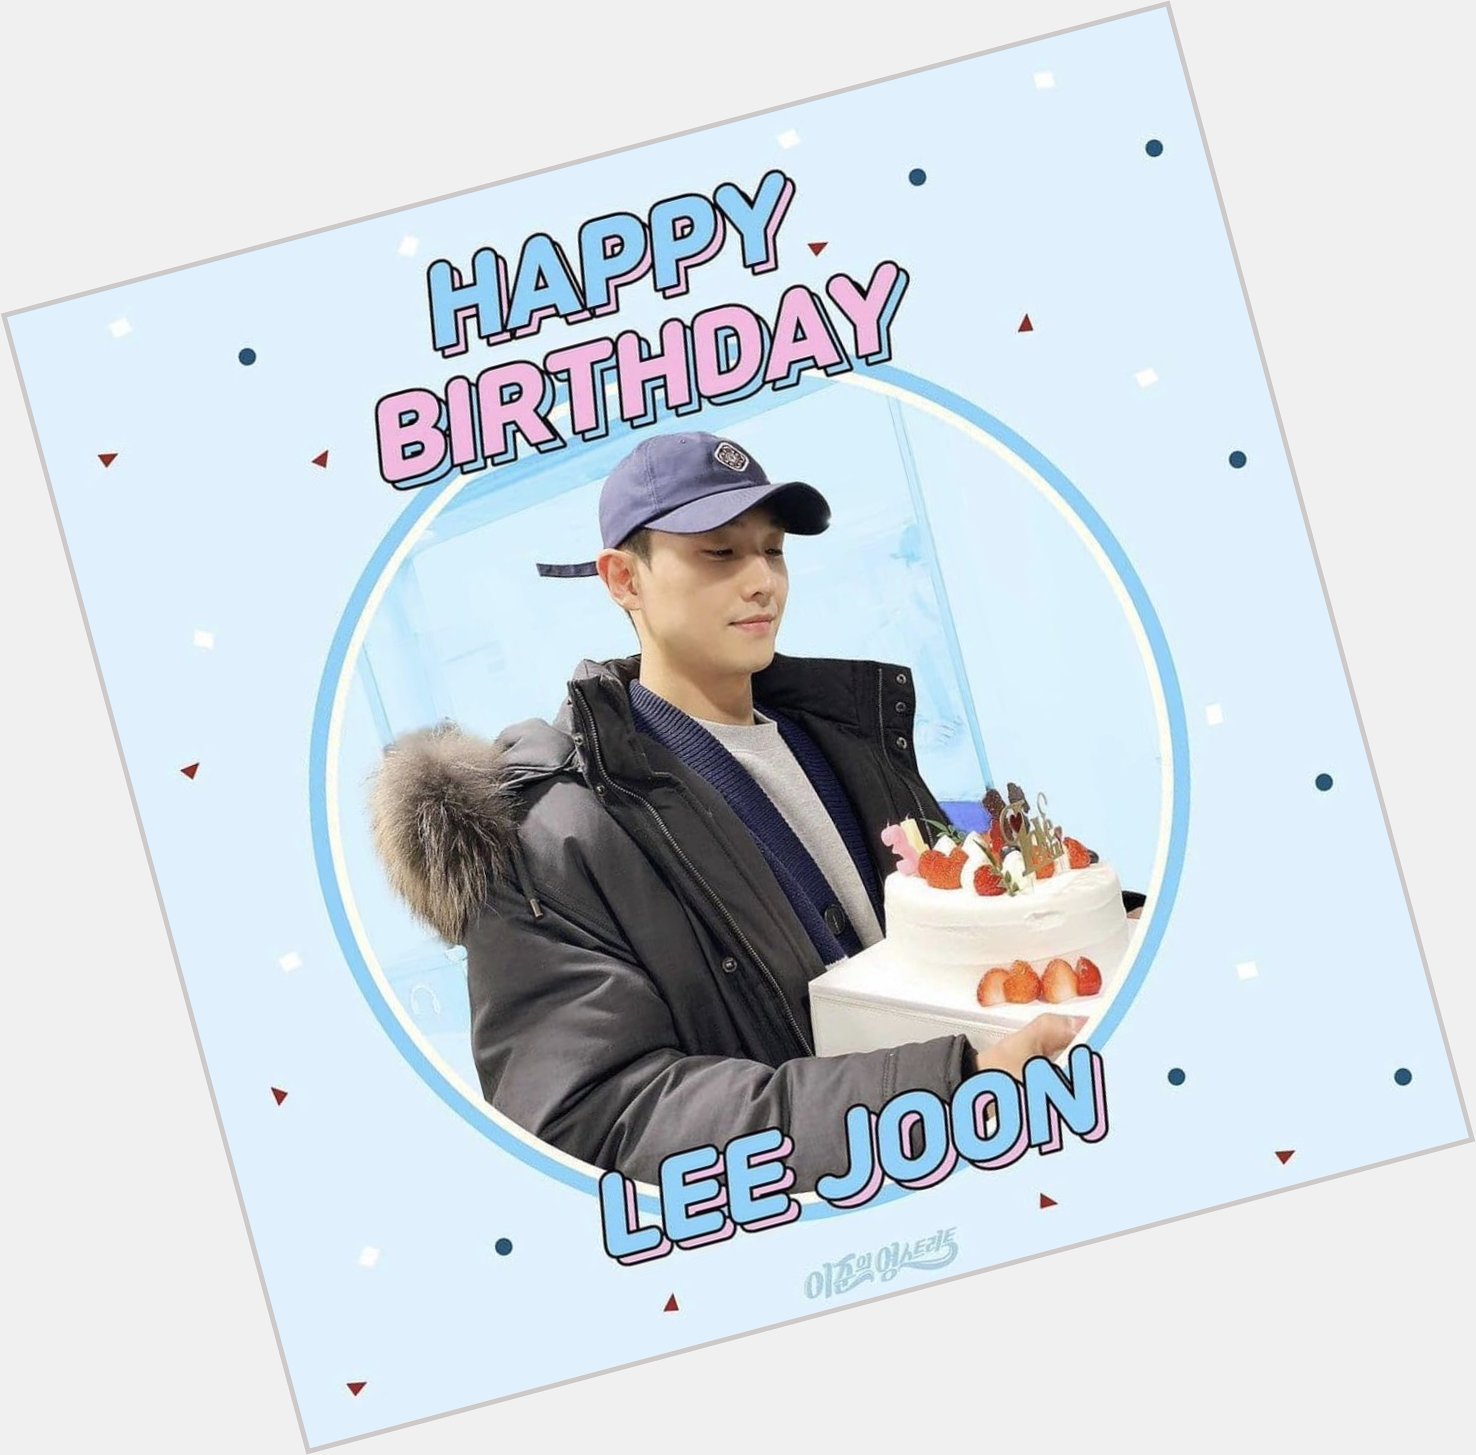 - 20210207 -
Happy birthday Lee Joon   